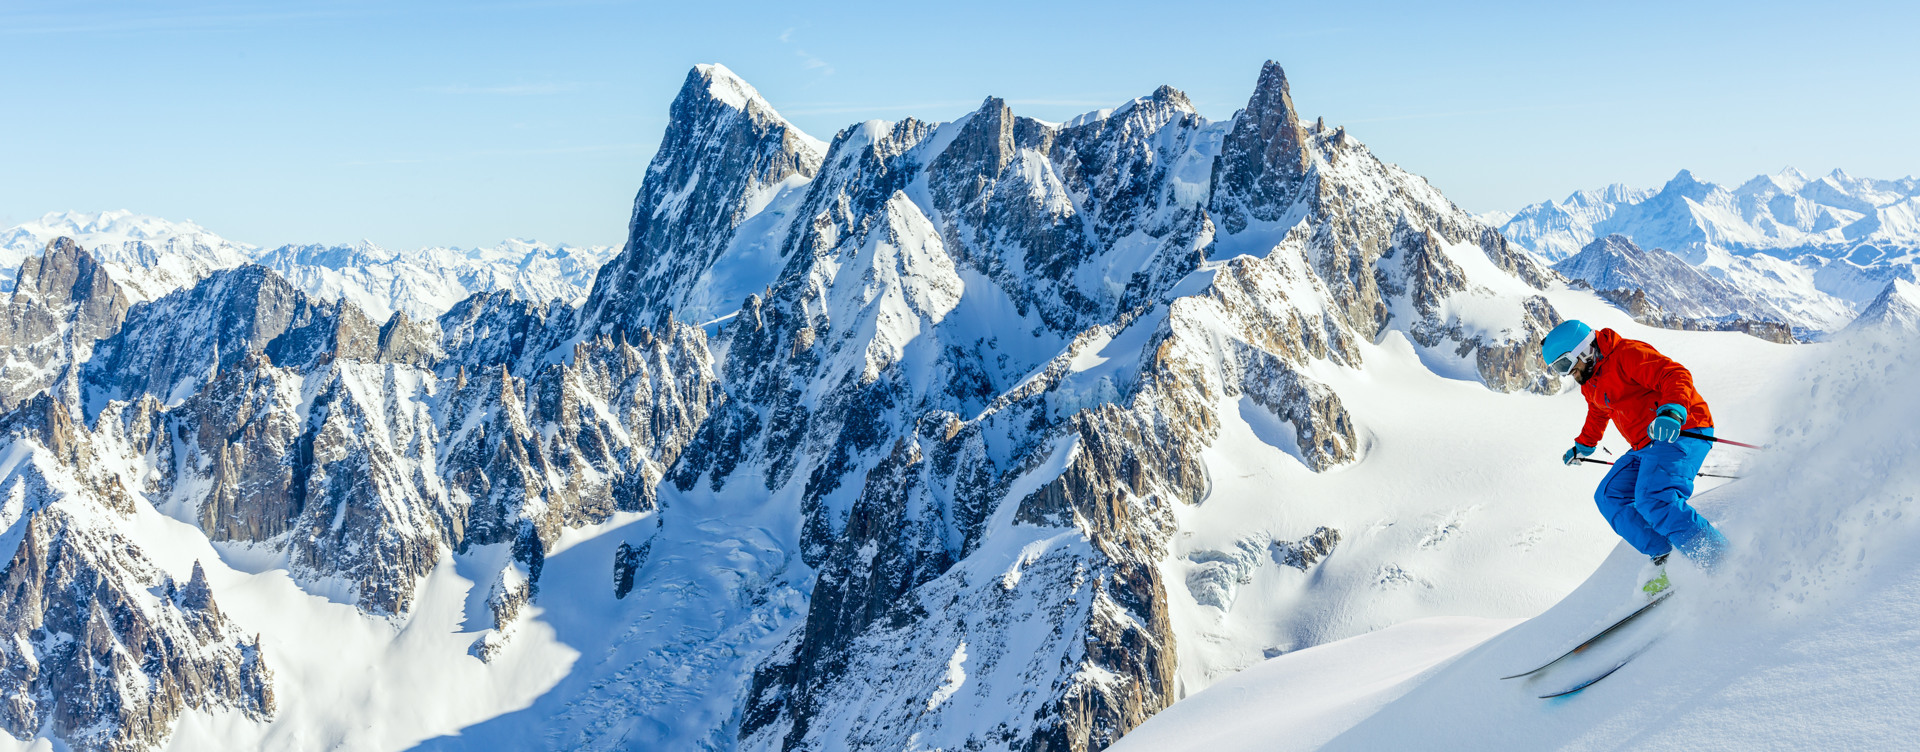 Beleef een onvergetelijke wintersportvakantie
op ons resort in de Franse Alpen